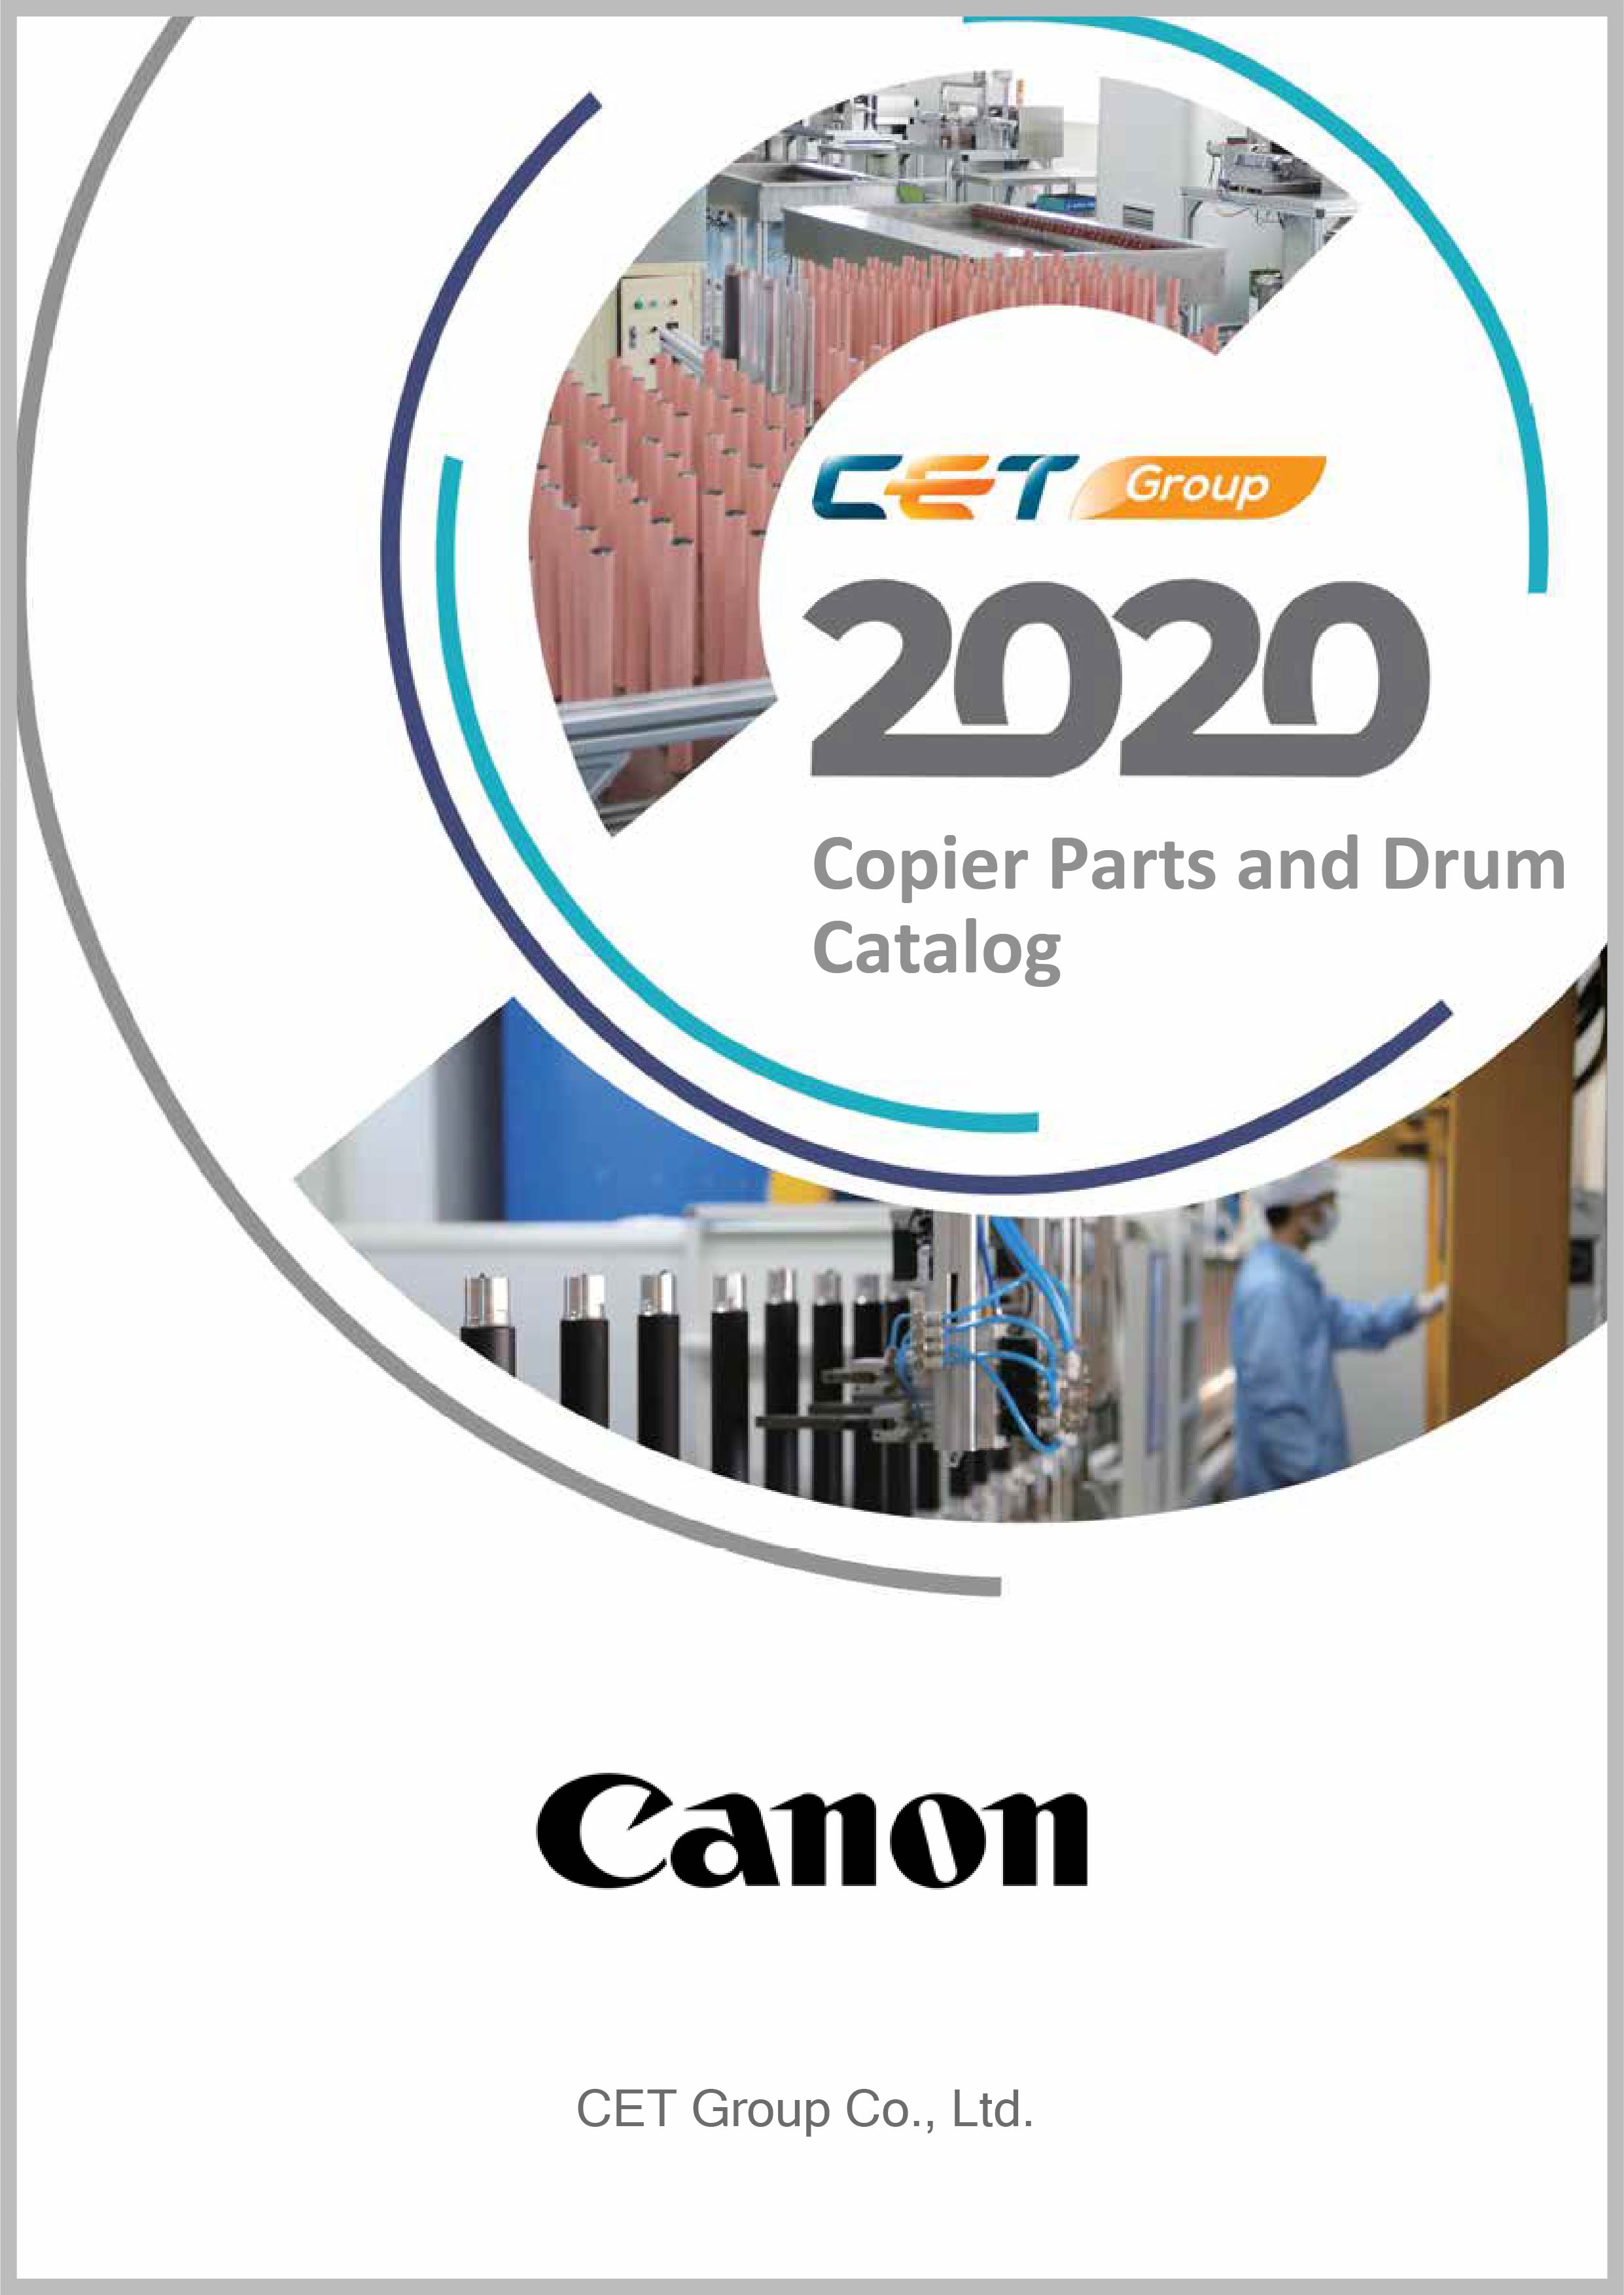 Canon_CET Copier partsand drum Catalog_2020_